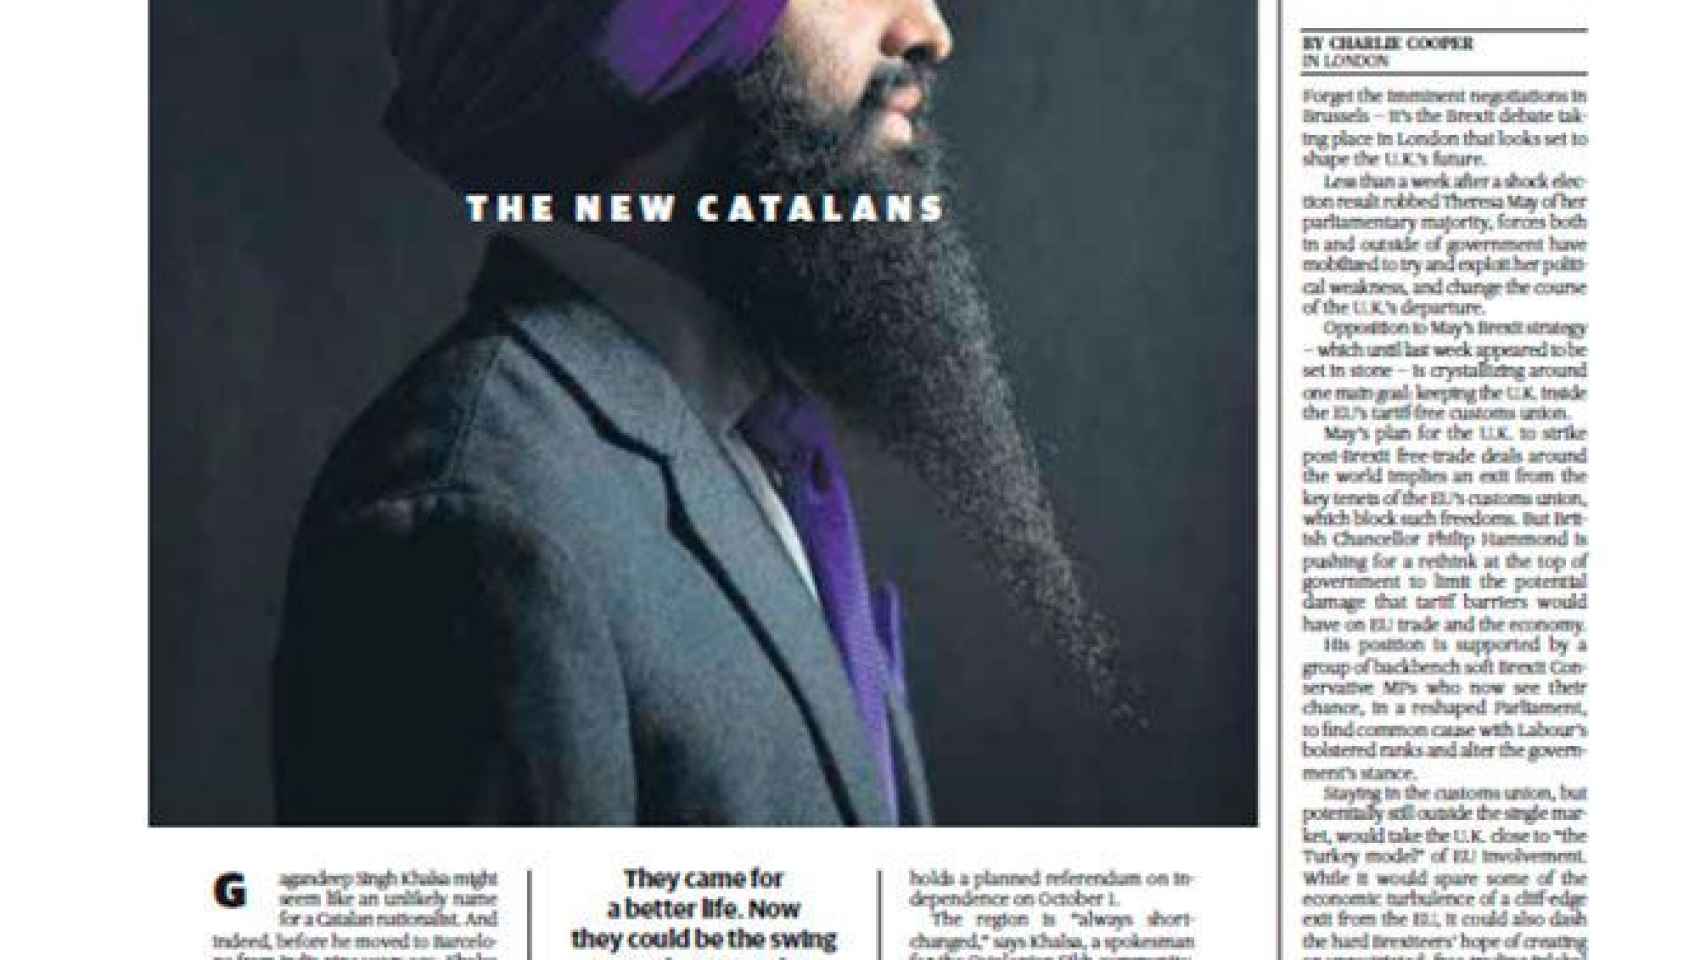 La portada del semanario 'Politico' del 15 de junio de 2017 sobre Los nuevos catalanes / CG